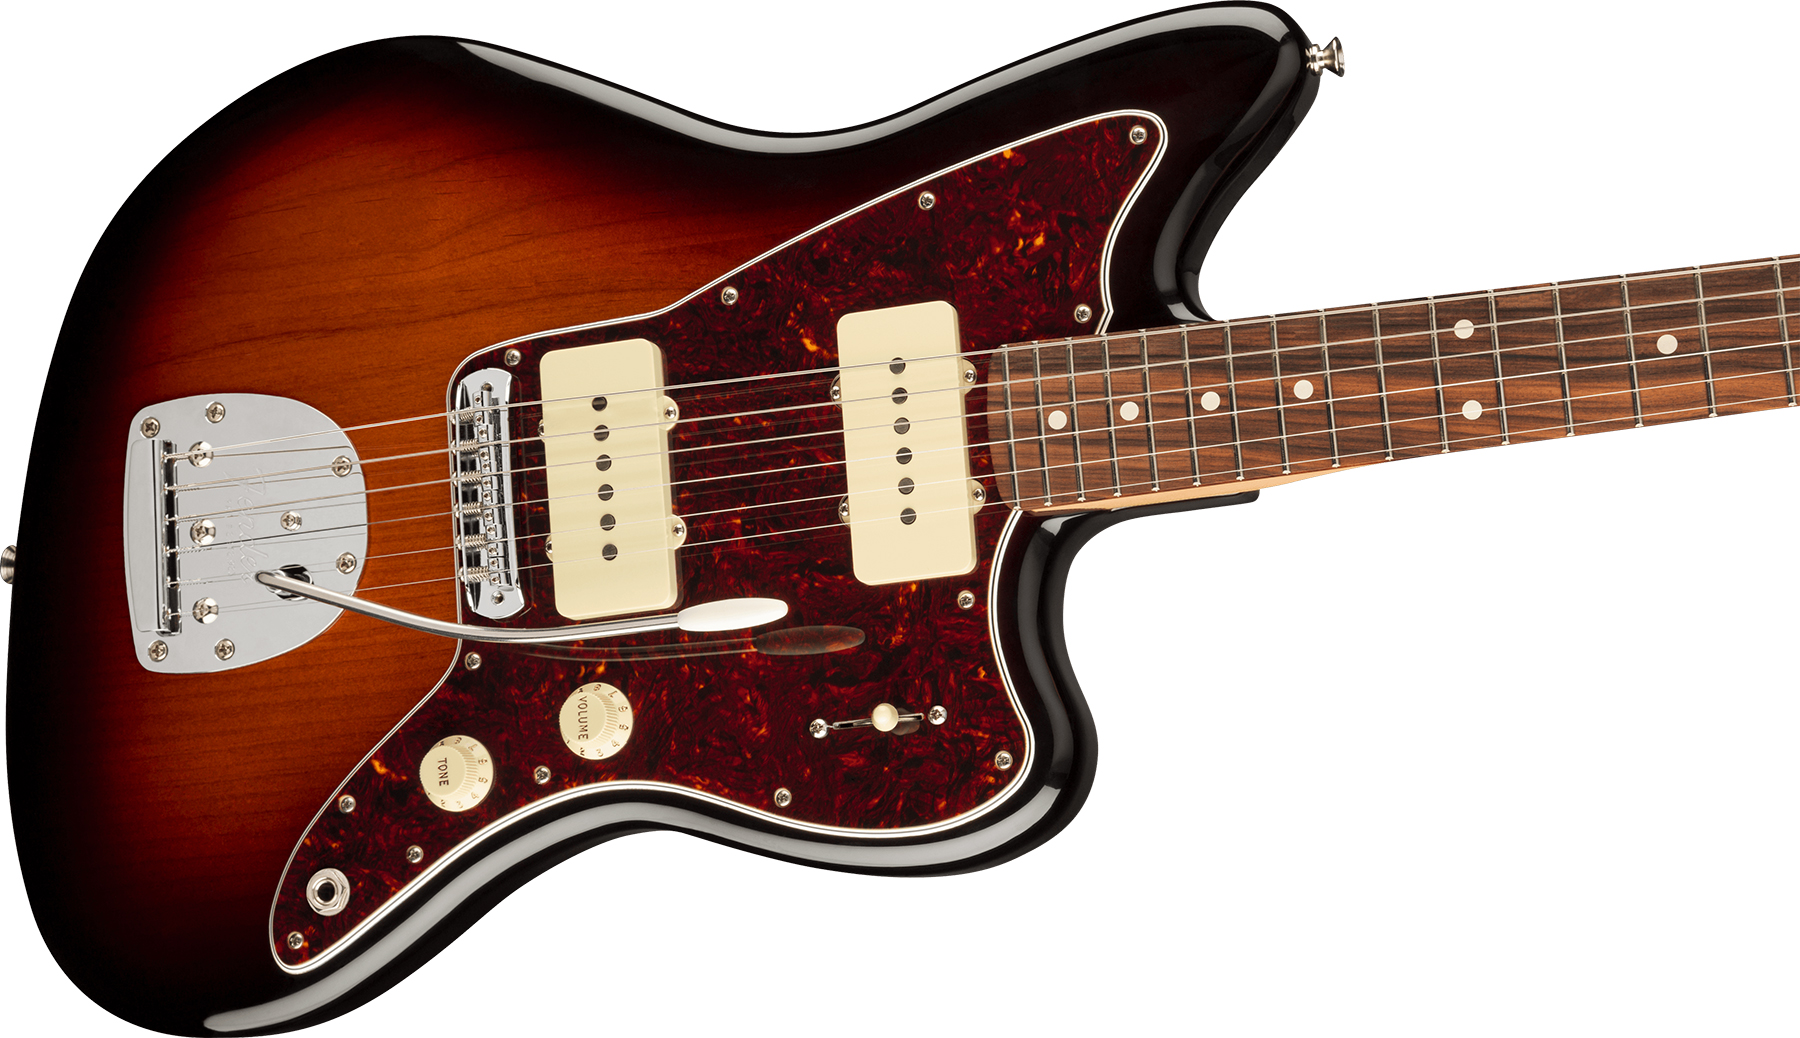 Fender Jazzmaster Player Ltd 2s Trem Pf - 3-color Sunburst - Retro rock electric guitar - Variation 2